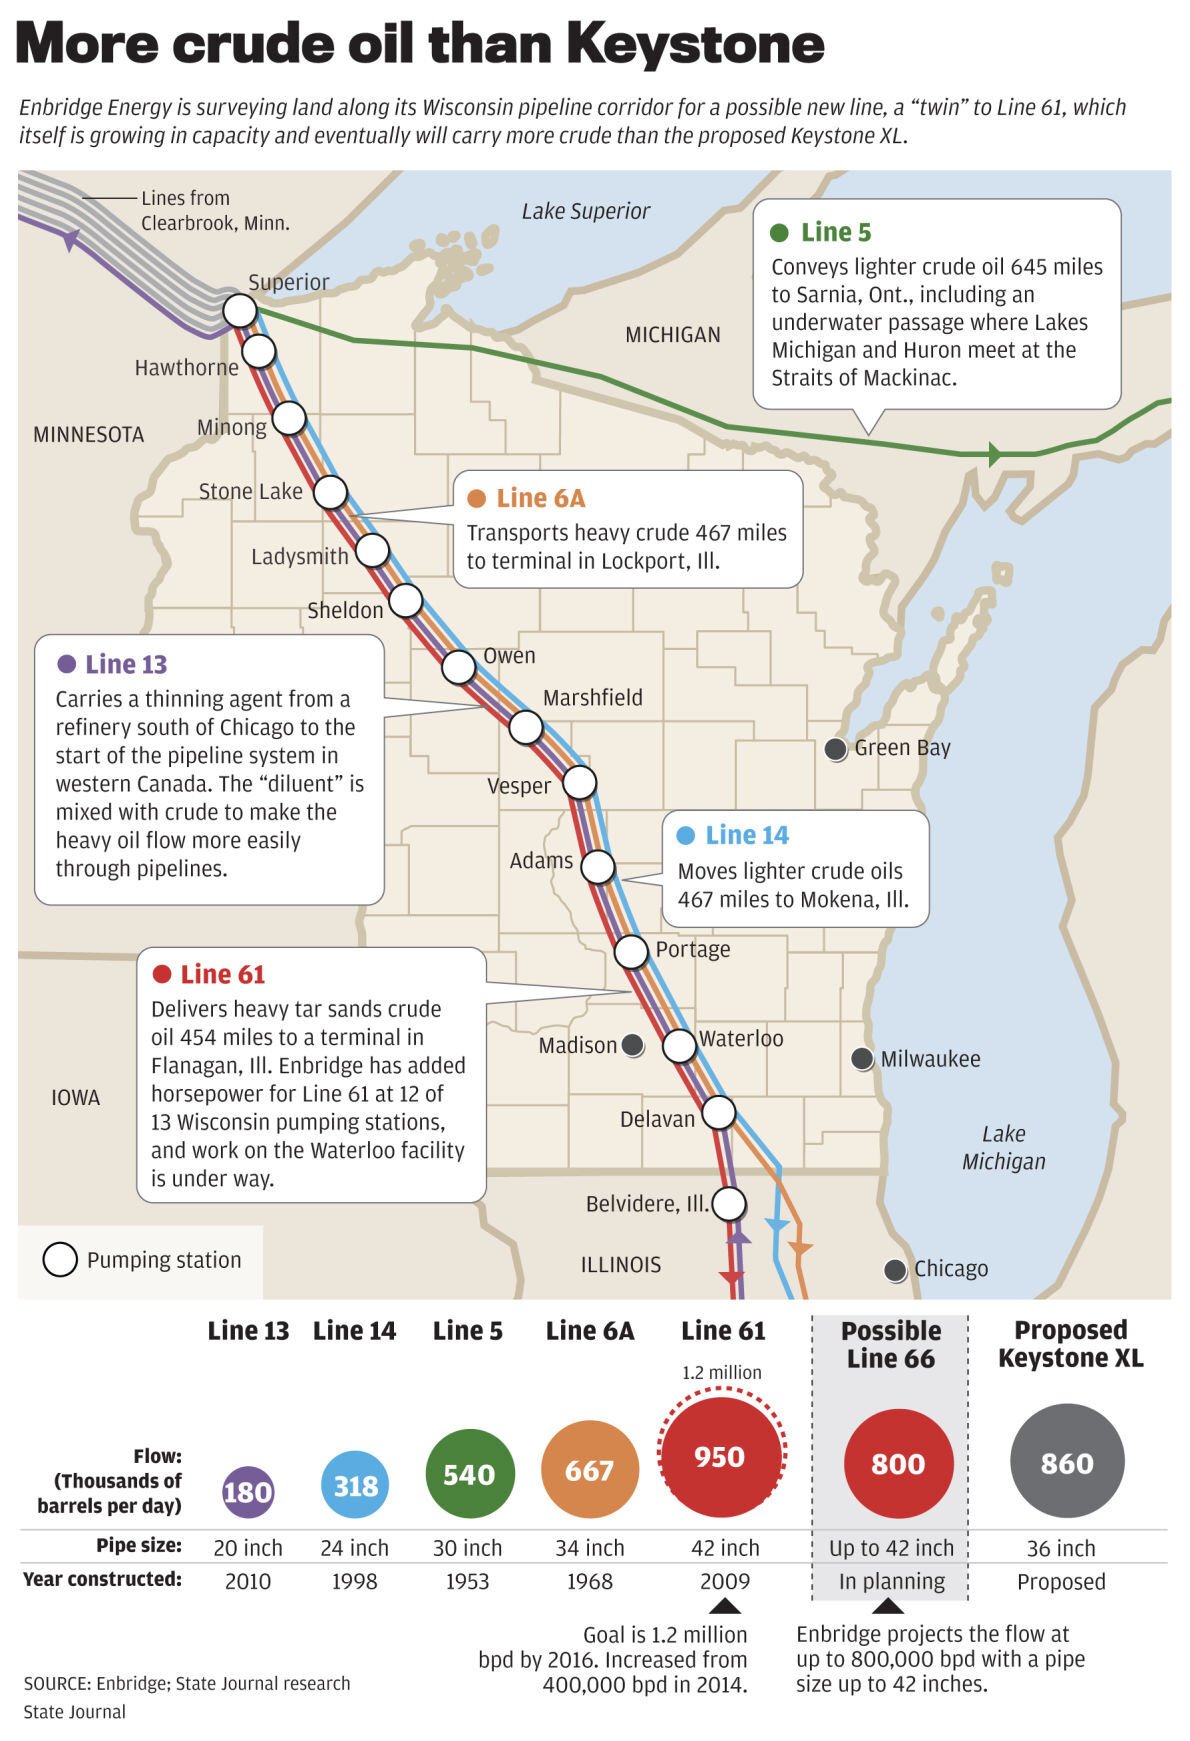 Enbridge pipeline routes